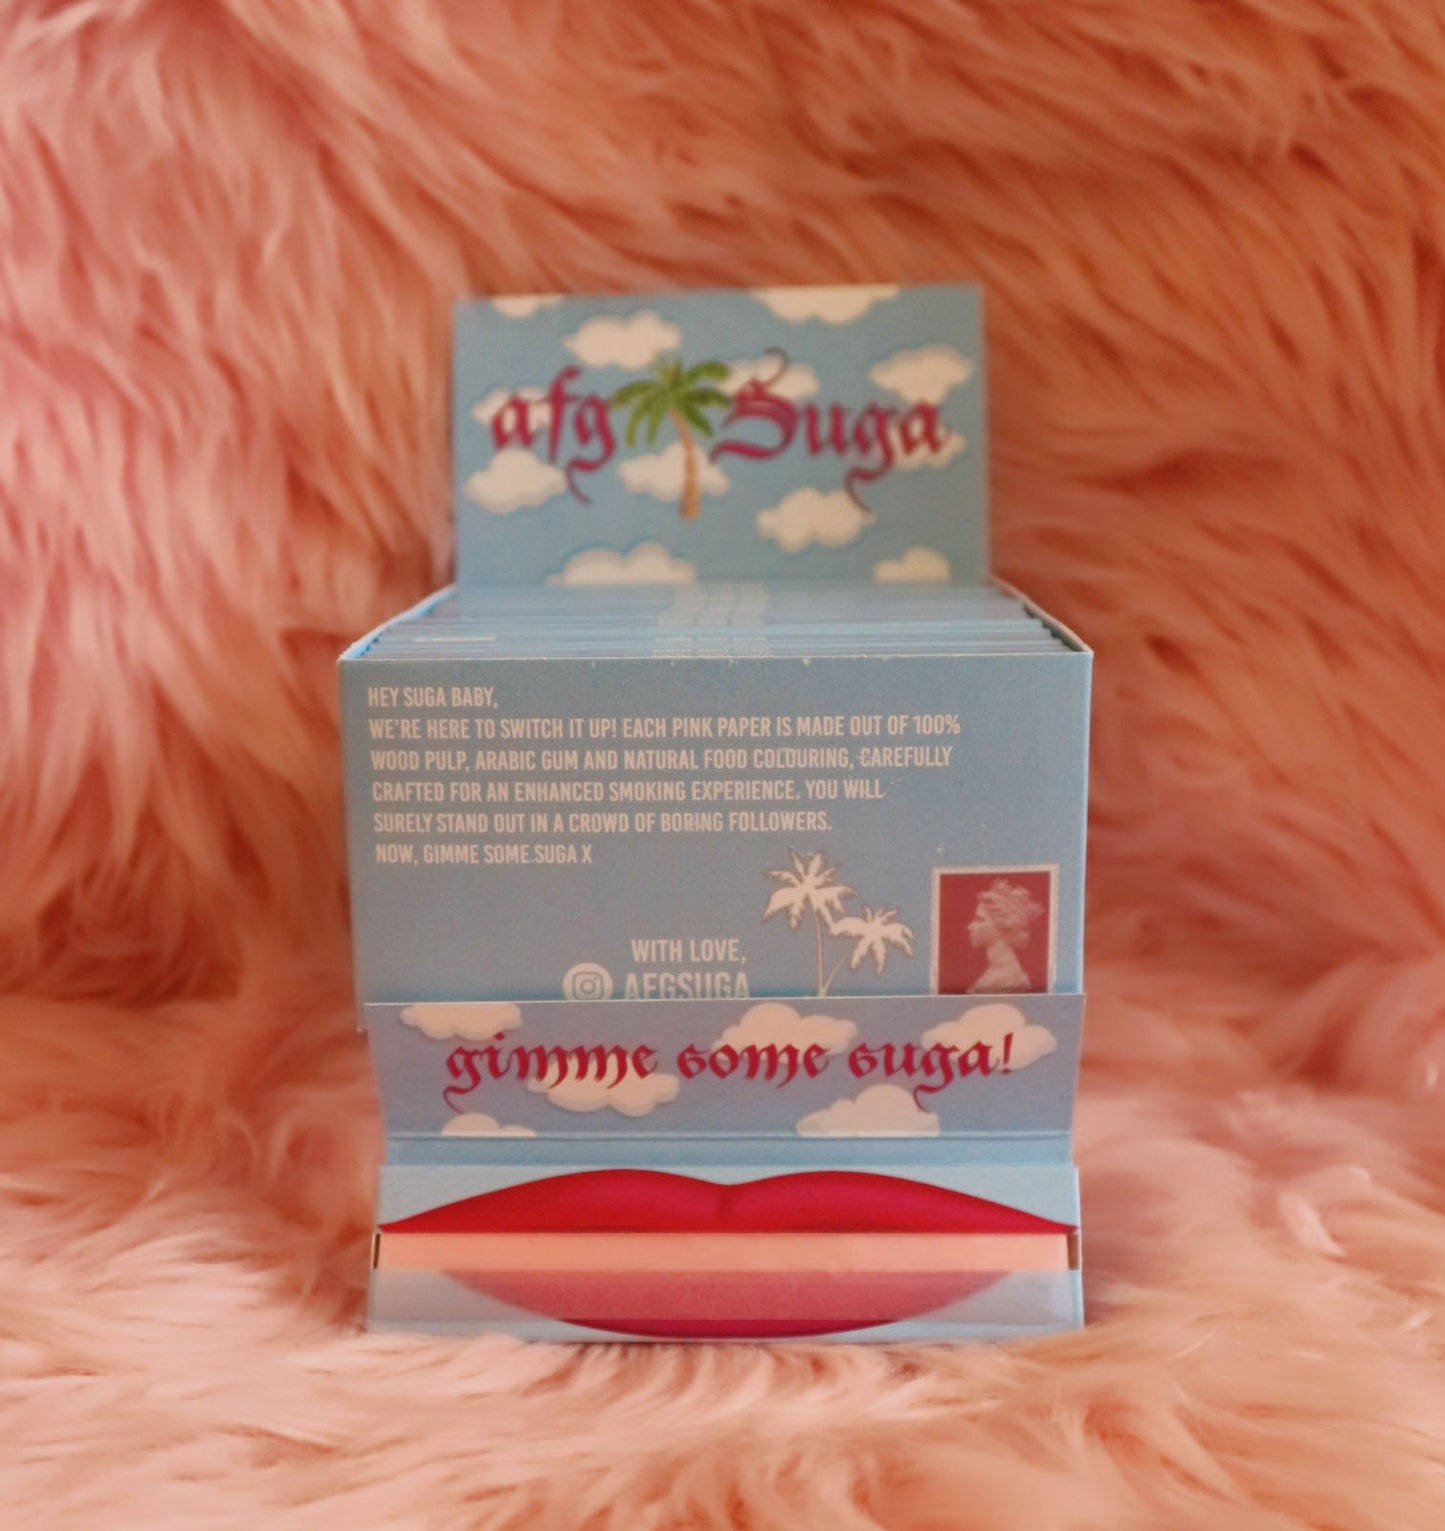 005: Wholesale Afg Suga OG Pink Rolling Paper Box of 40